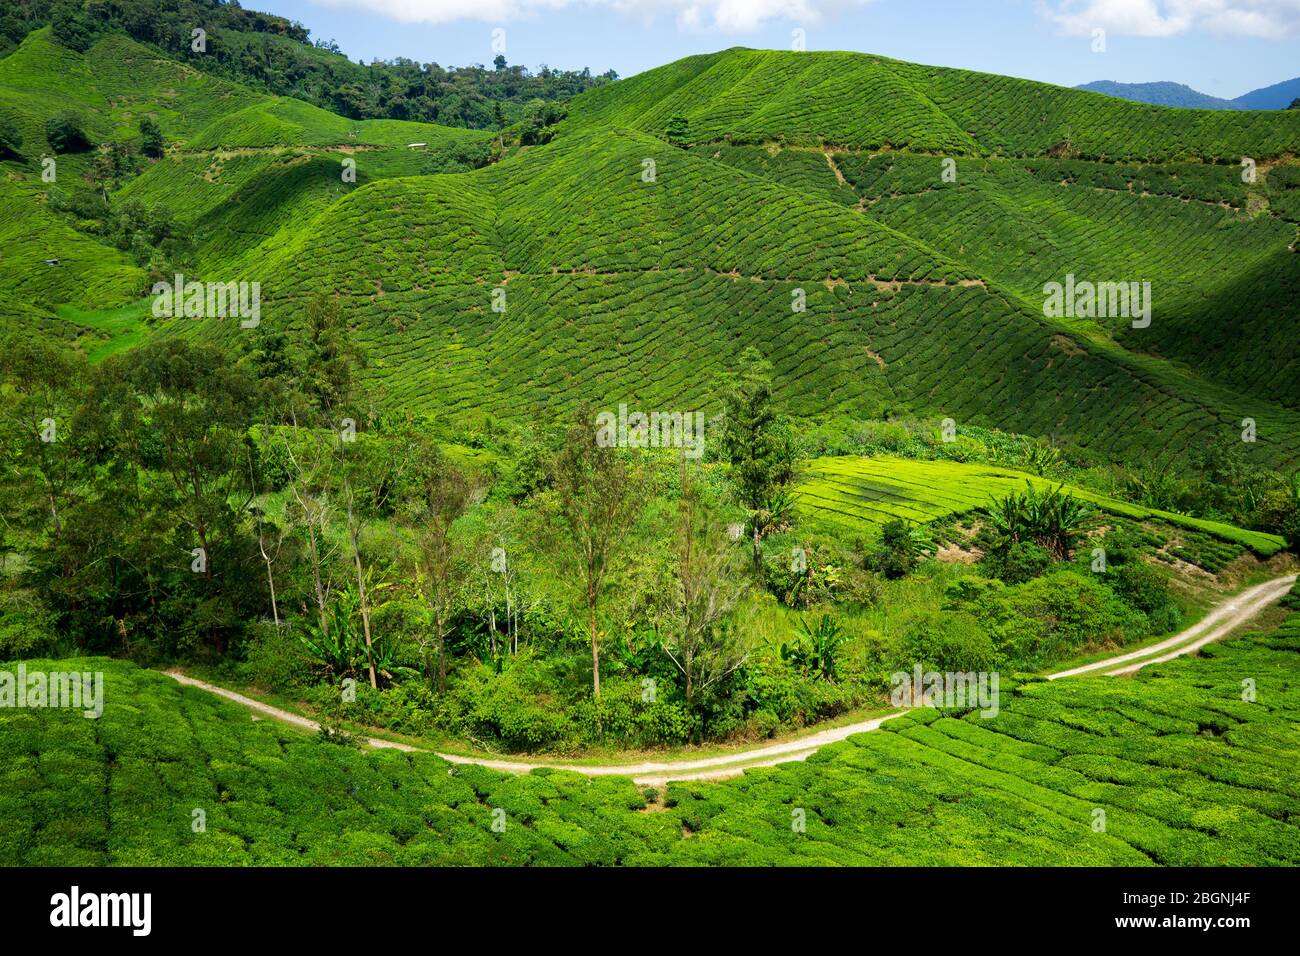 La Boh Tea Company fue fundada en 1929 y es una de las marcas de té más famosas de Malasia. Uno de los lugares más destacados de las tierras altas de Cameron. Foto de stock